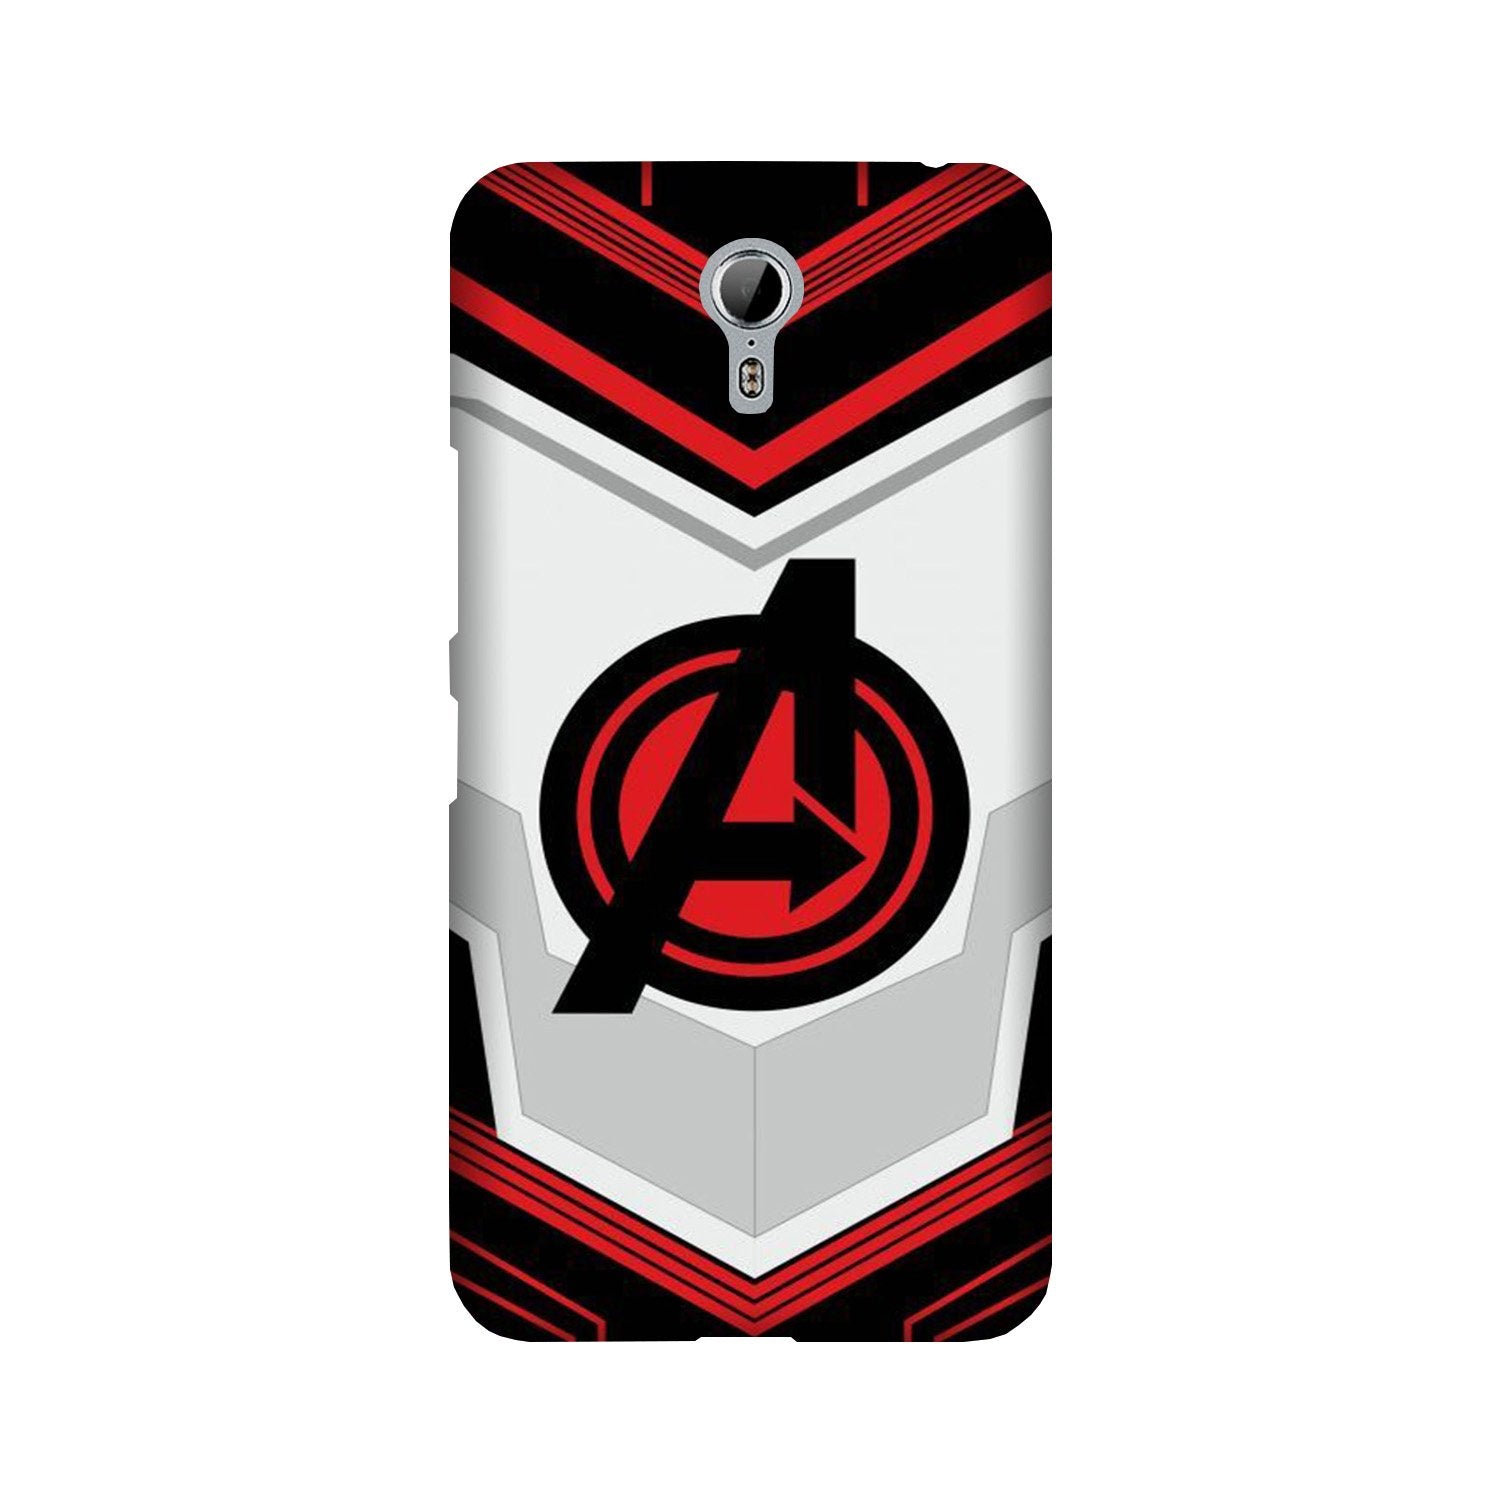 Avengers2 Case for Lenovo Zuk Z1 (Design No. 255)